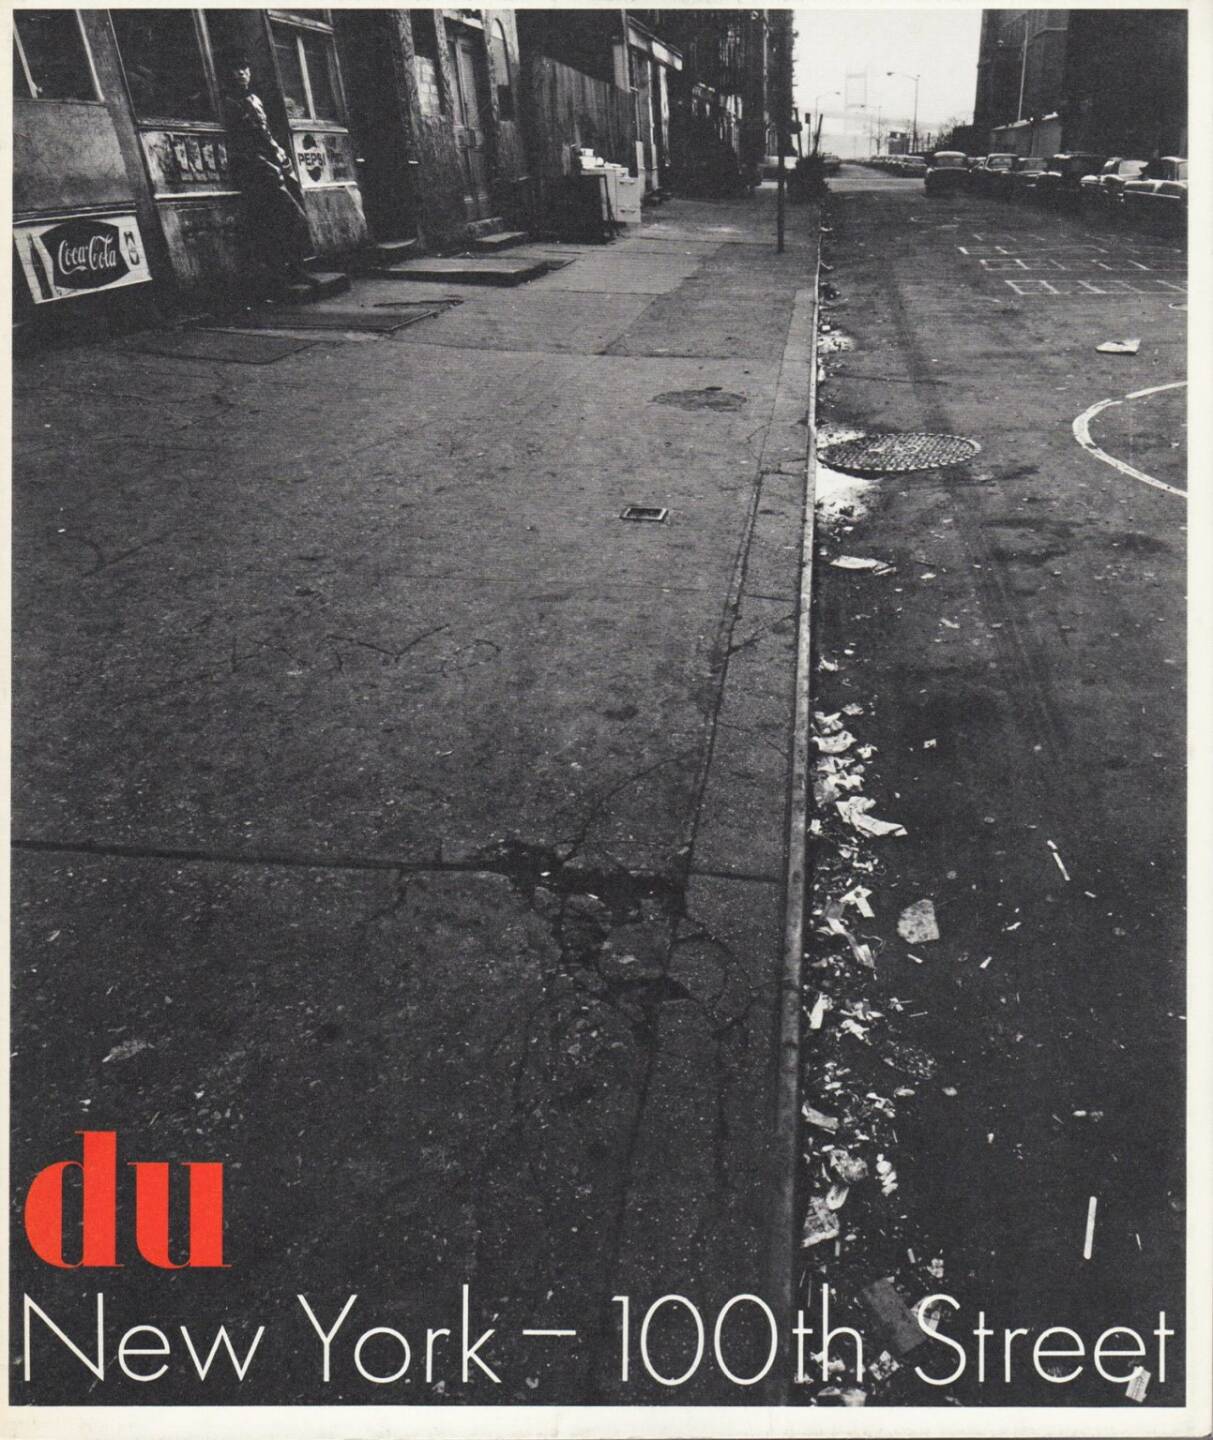 Bruce Davidson's - New York - East 100th Street, Conzett & Huber 1969, Cover - http://josefchladek.com/book/m_gasser_ed_bruce_davidson_-_new_york_-_east_100th_street_in_du_kulturelle_monatsschrift_29_jahrgang_marz_1970